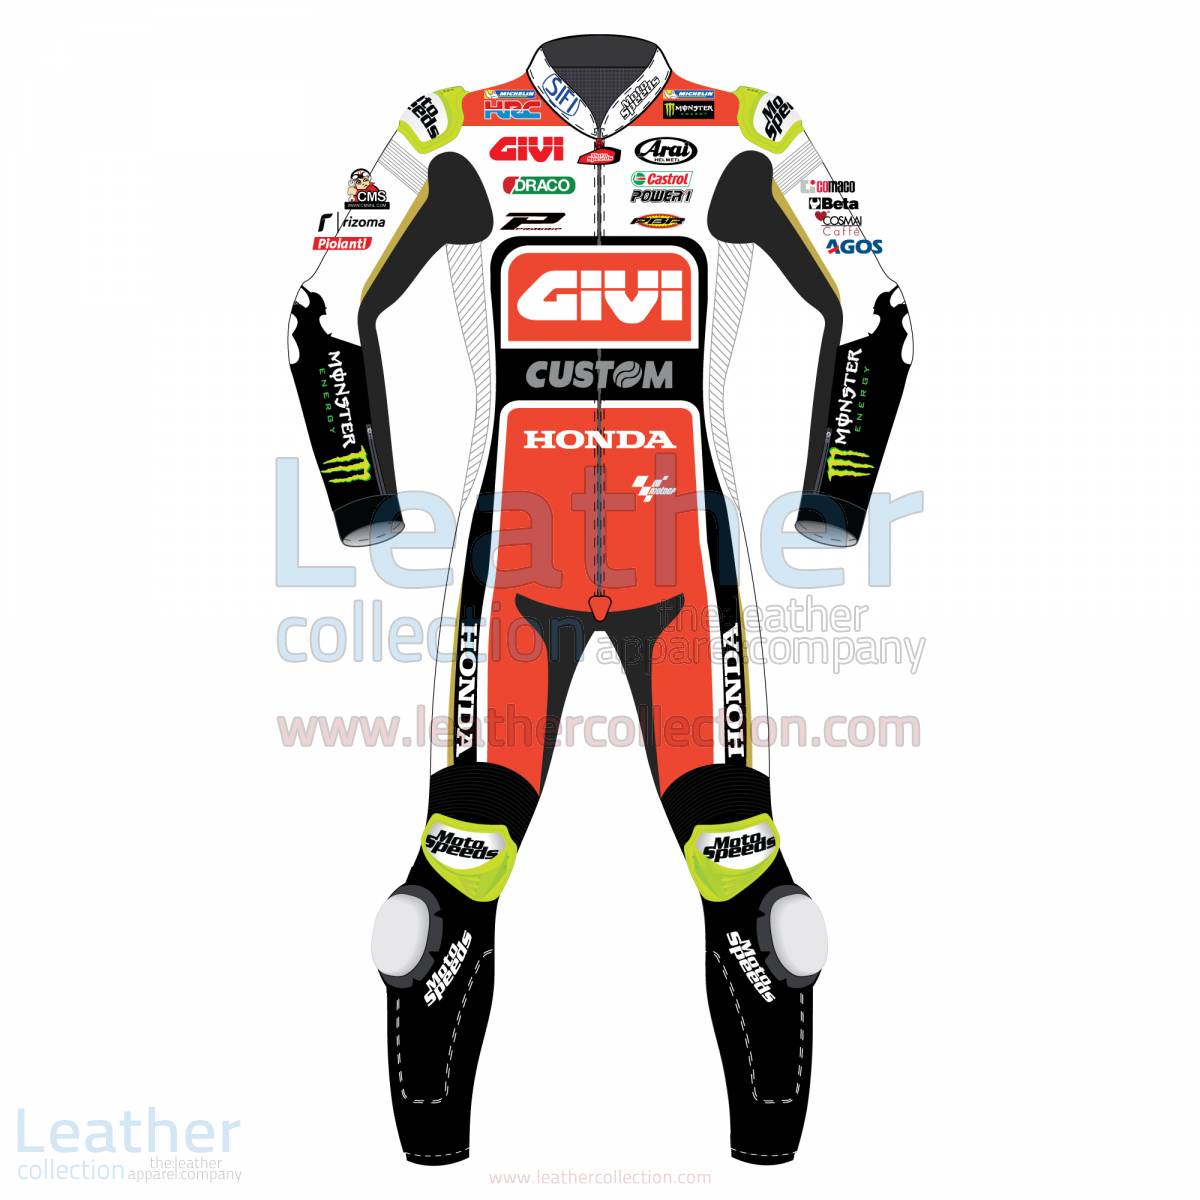 Cal Crutchlow LCR Honda 2017 MotoGP Race Suit – Honda Suit